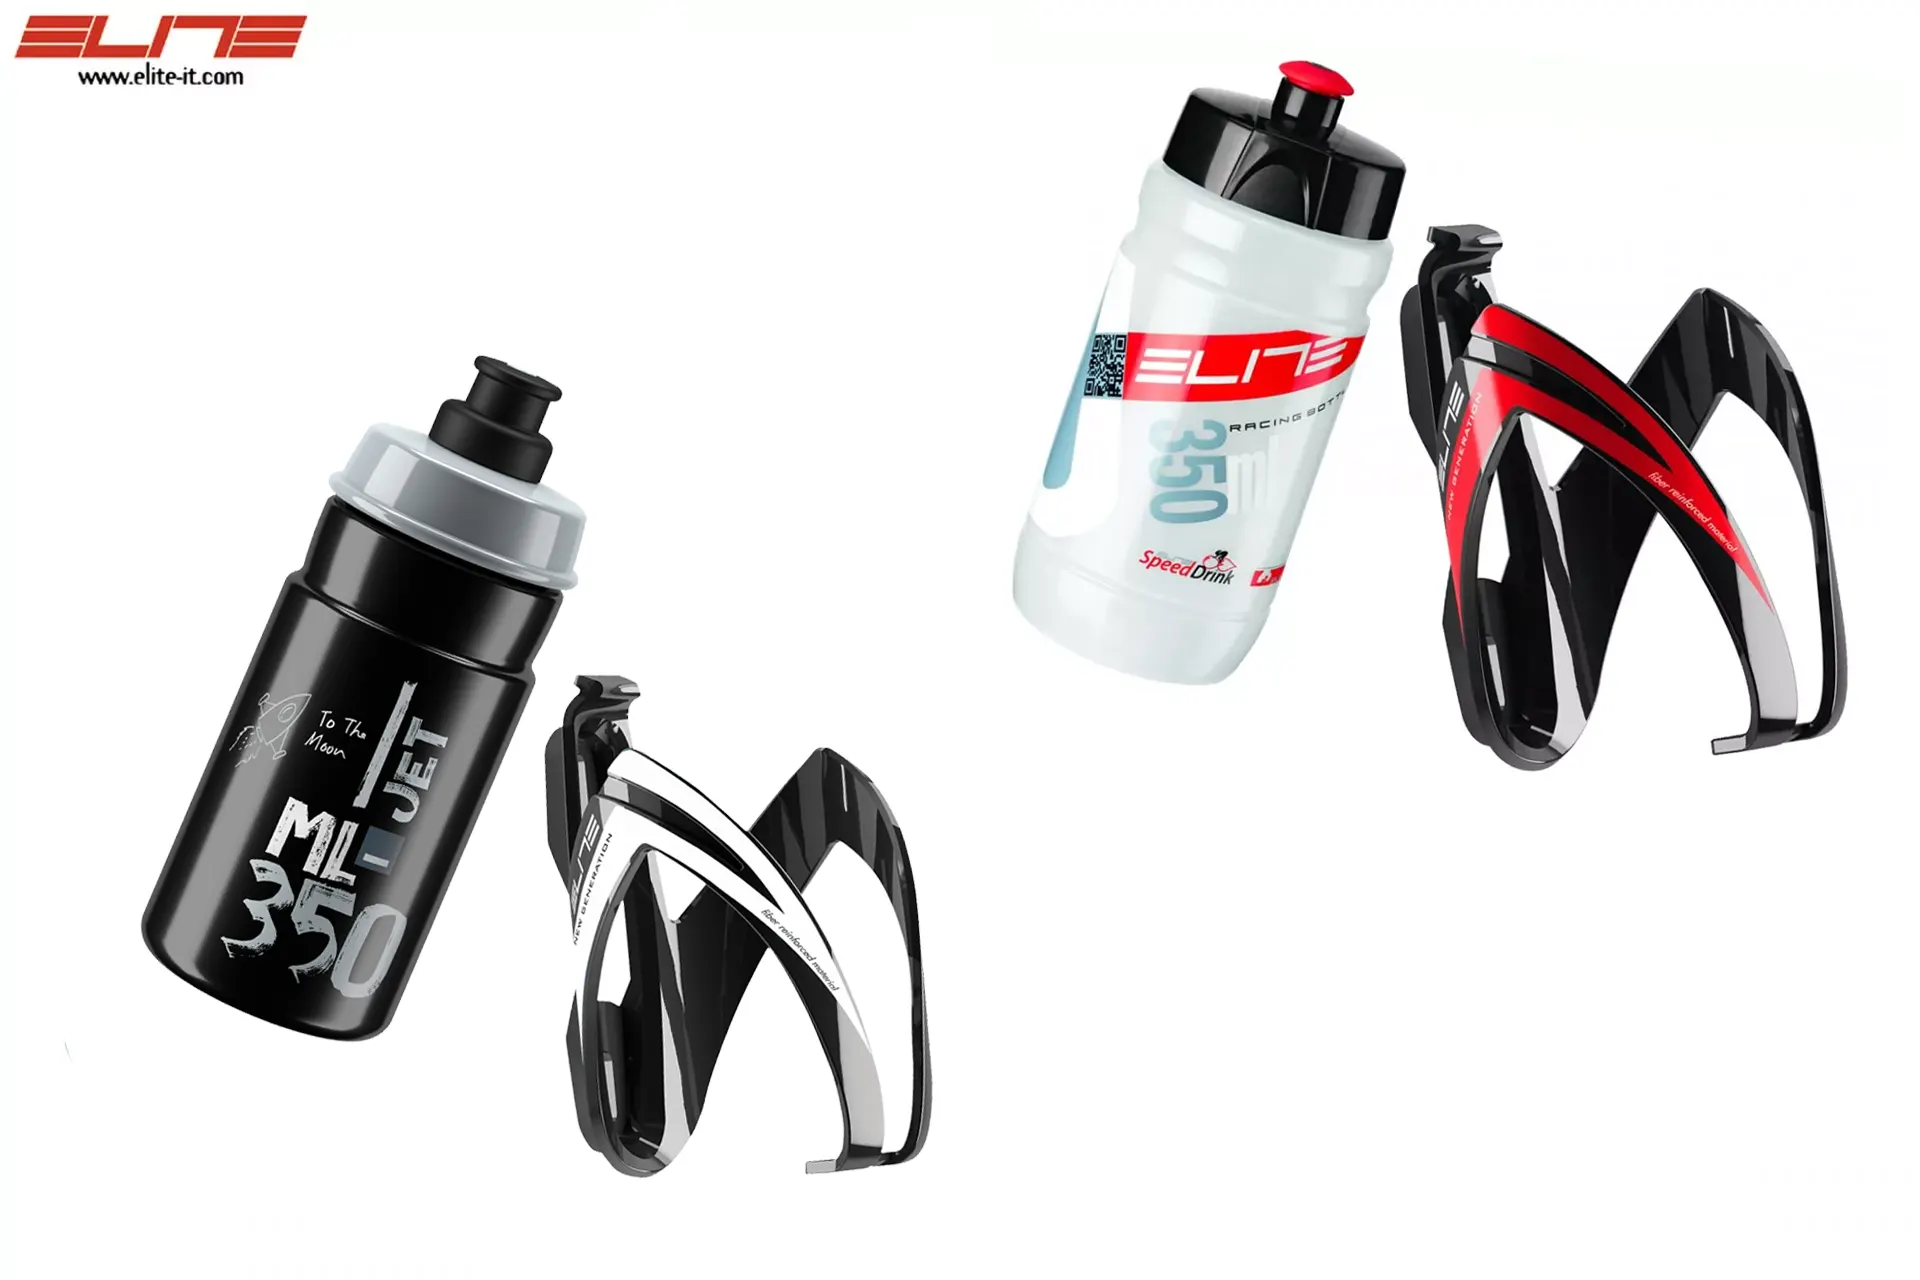 Elite Kit CEO - Trinkflasche + Halter-Set 350 ml -  schwarz oder rot